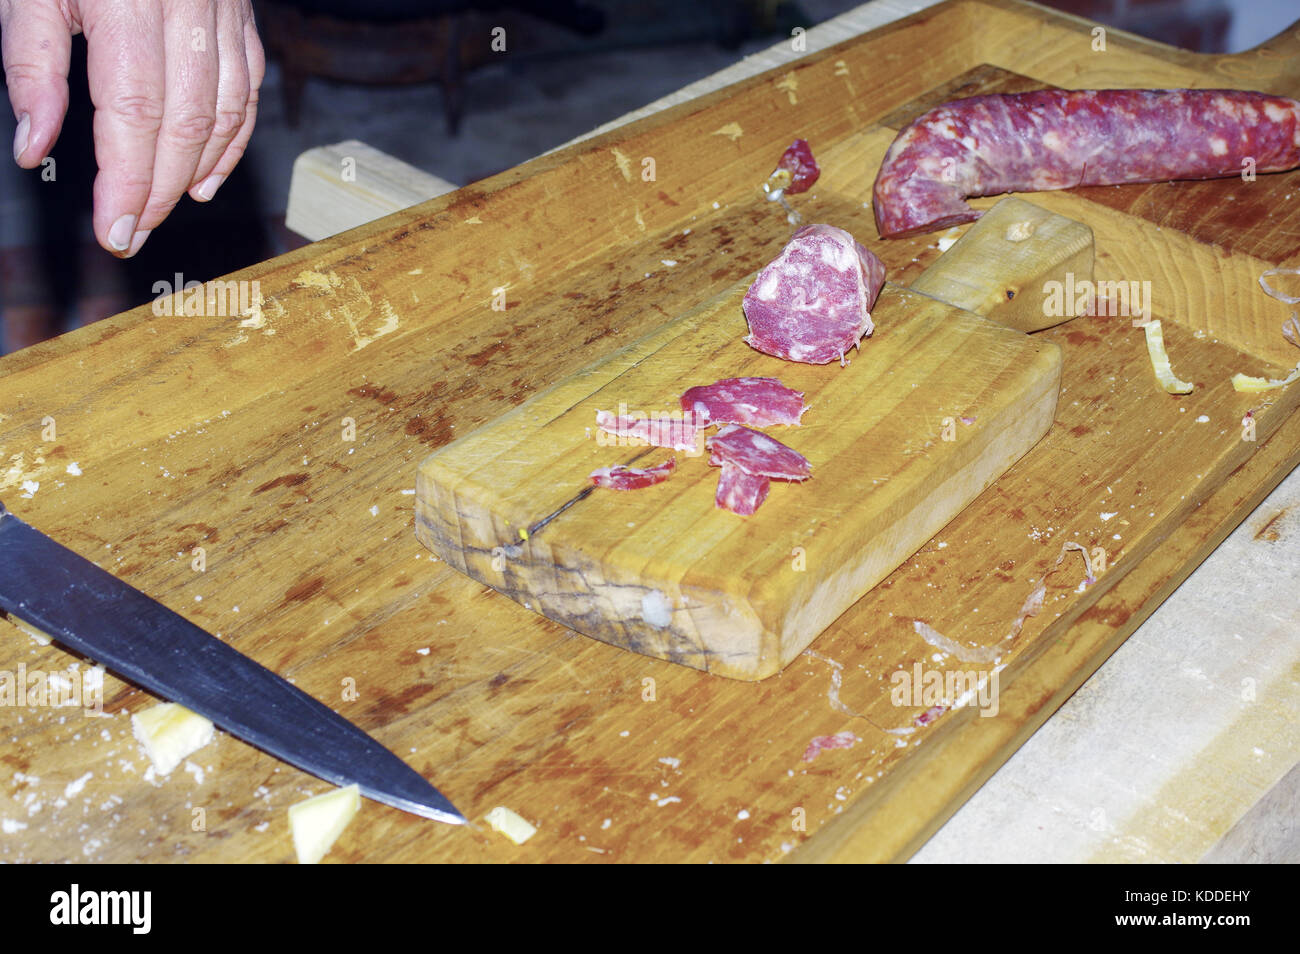 Meana Sardo, Nuoro, Sardinia. Pork sausage Stock Photo